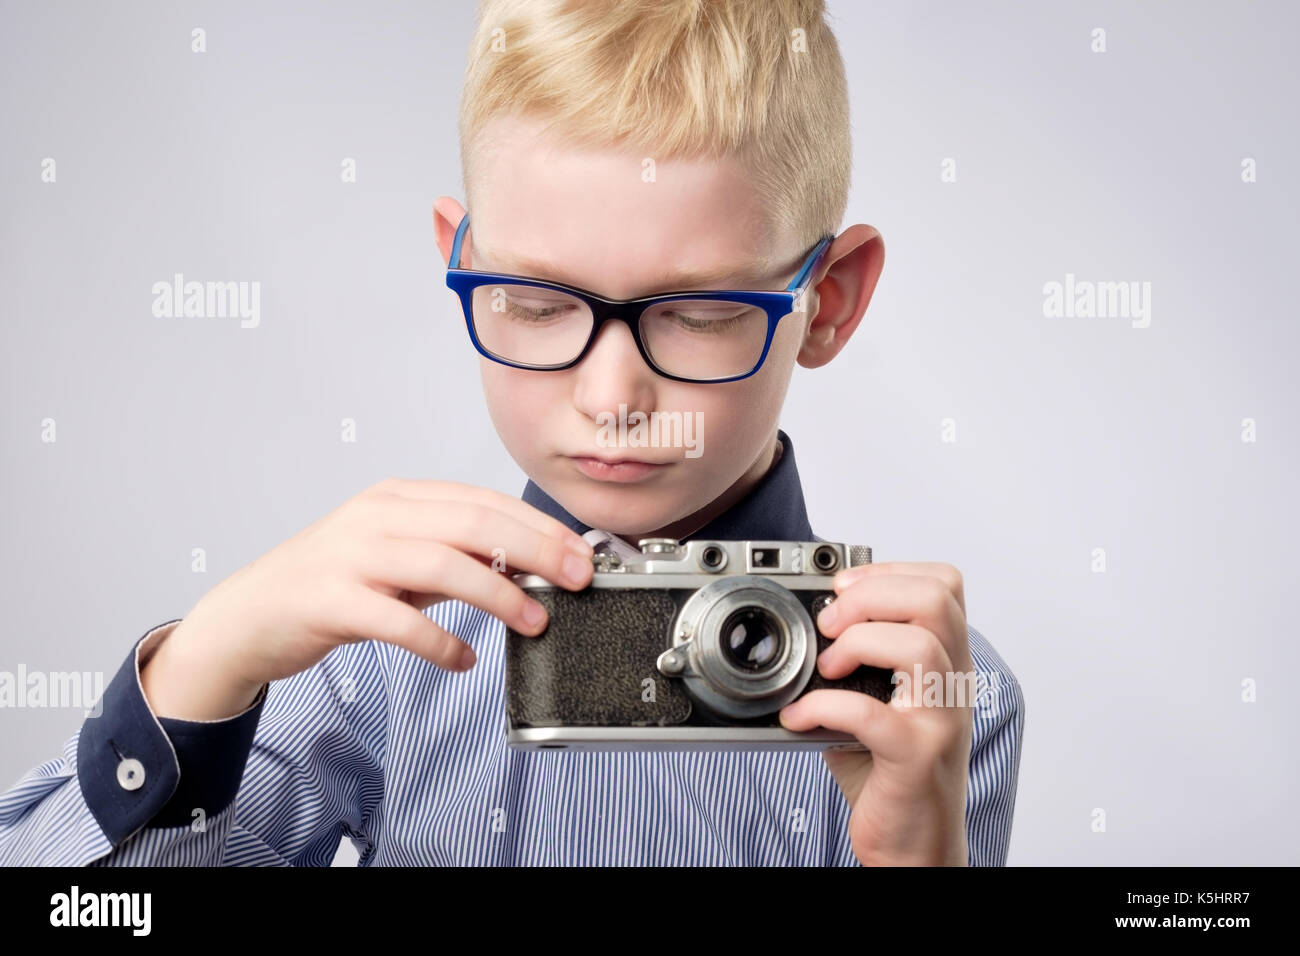 Fröhlich lächelnd Kind Junge Holding eine sofortige Kamera Stockfoto